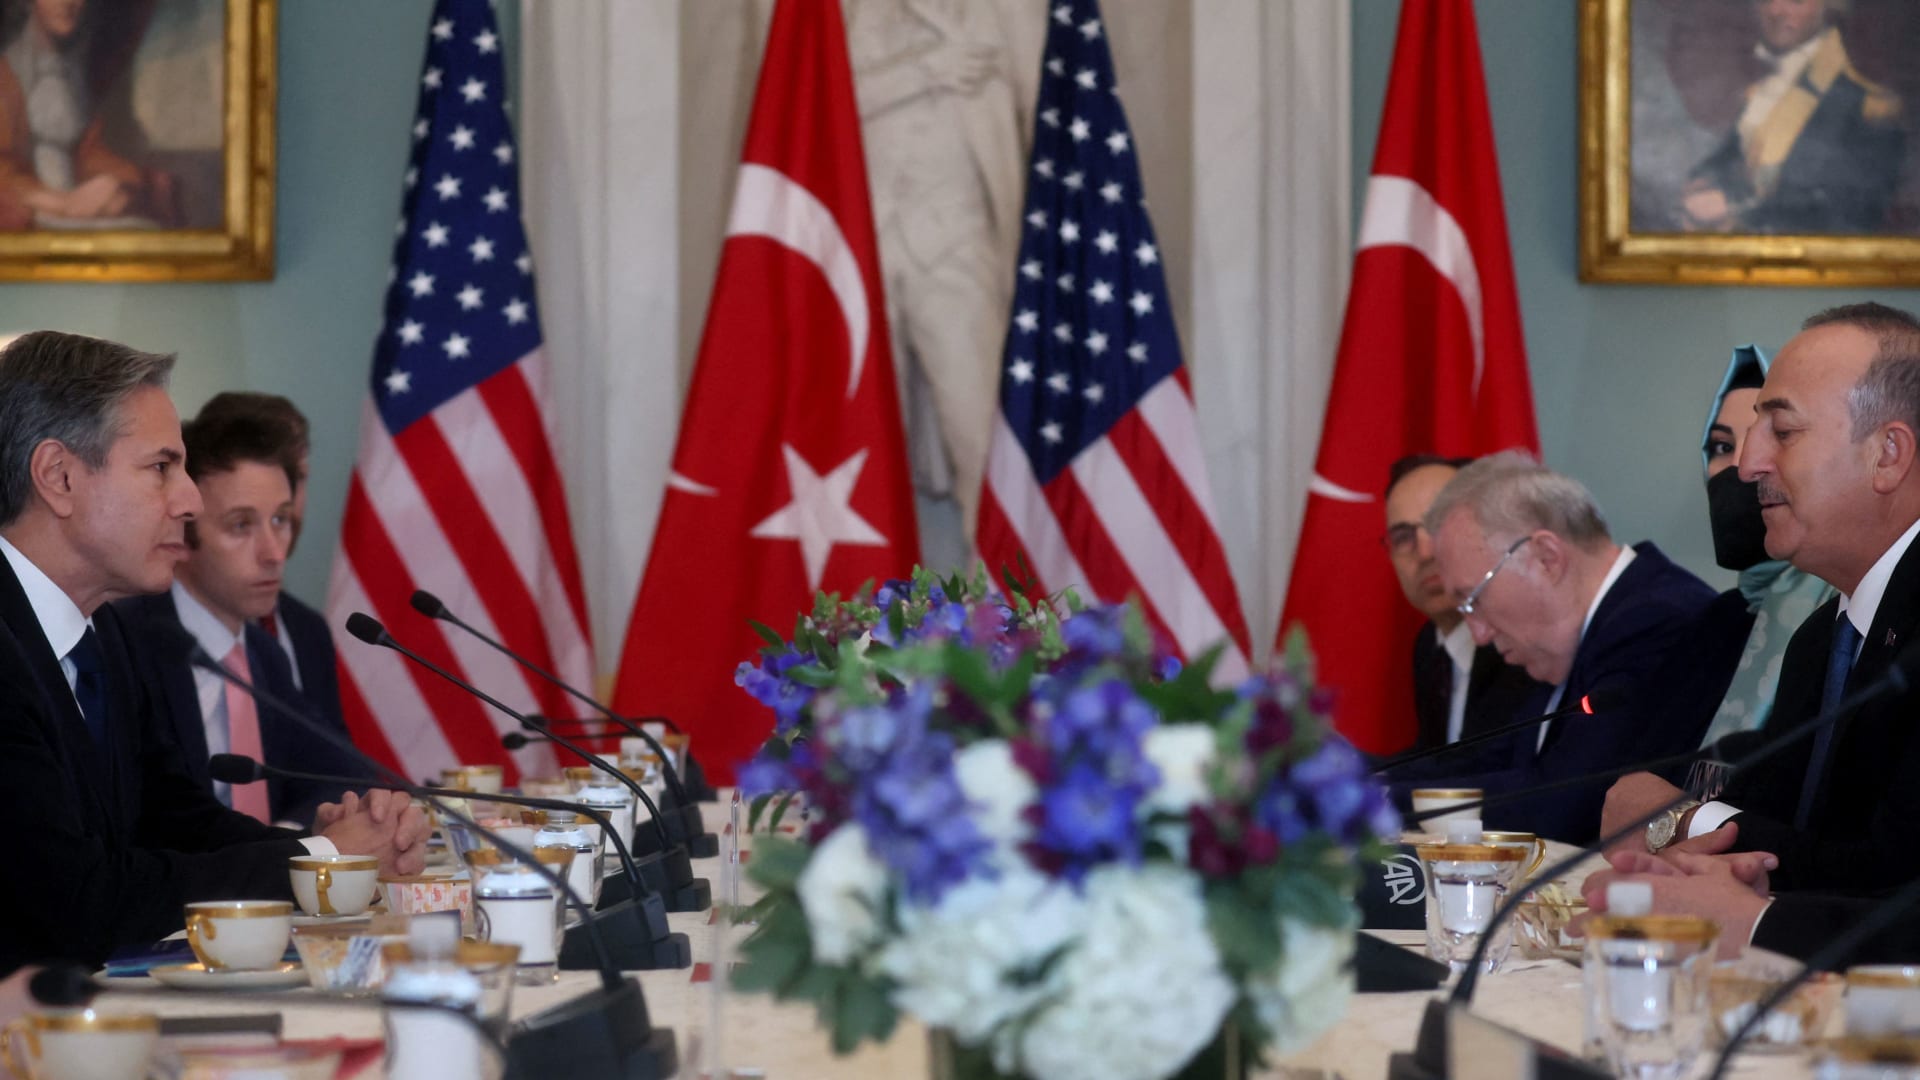 وزير خارجية أمريكا يتصل بنظيره التركي بشأن انضمام السويد إلى "الناتو"